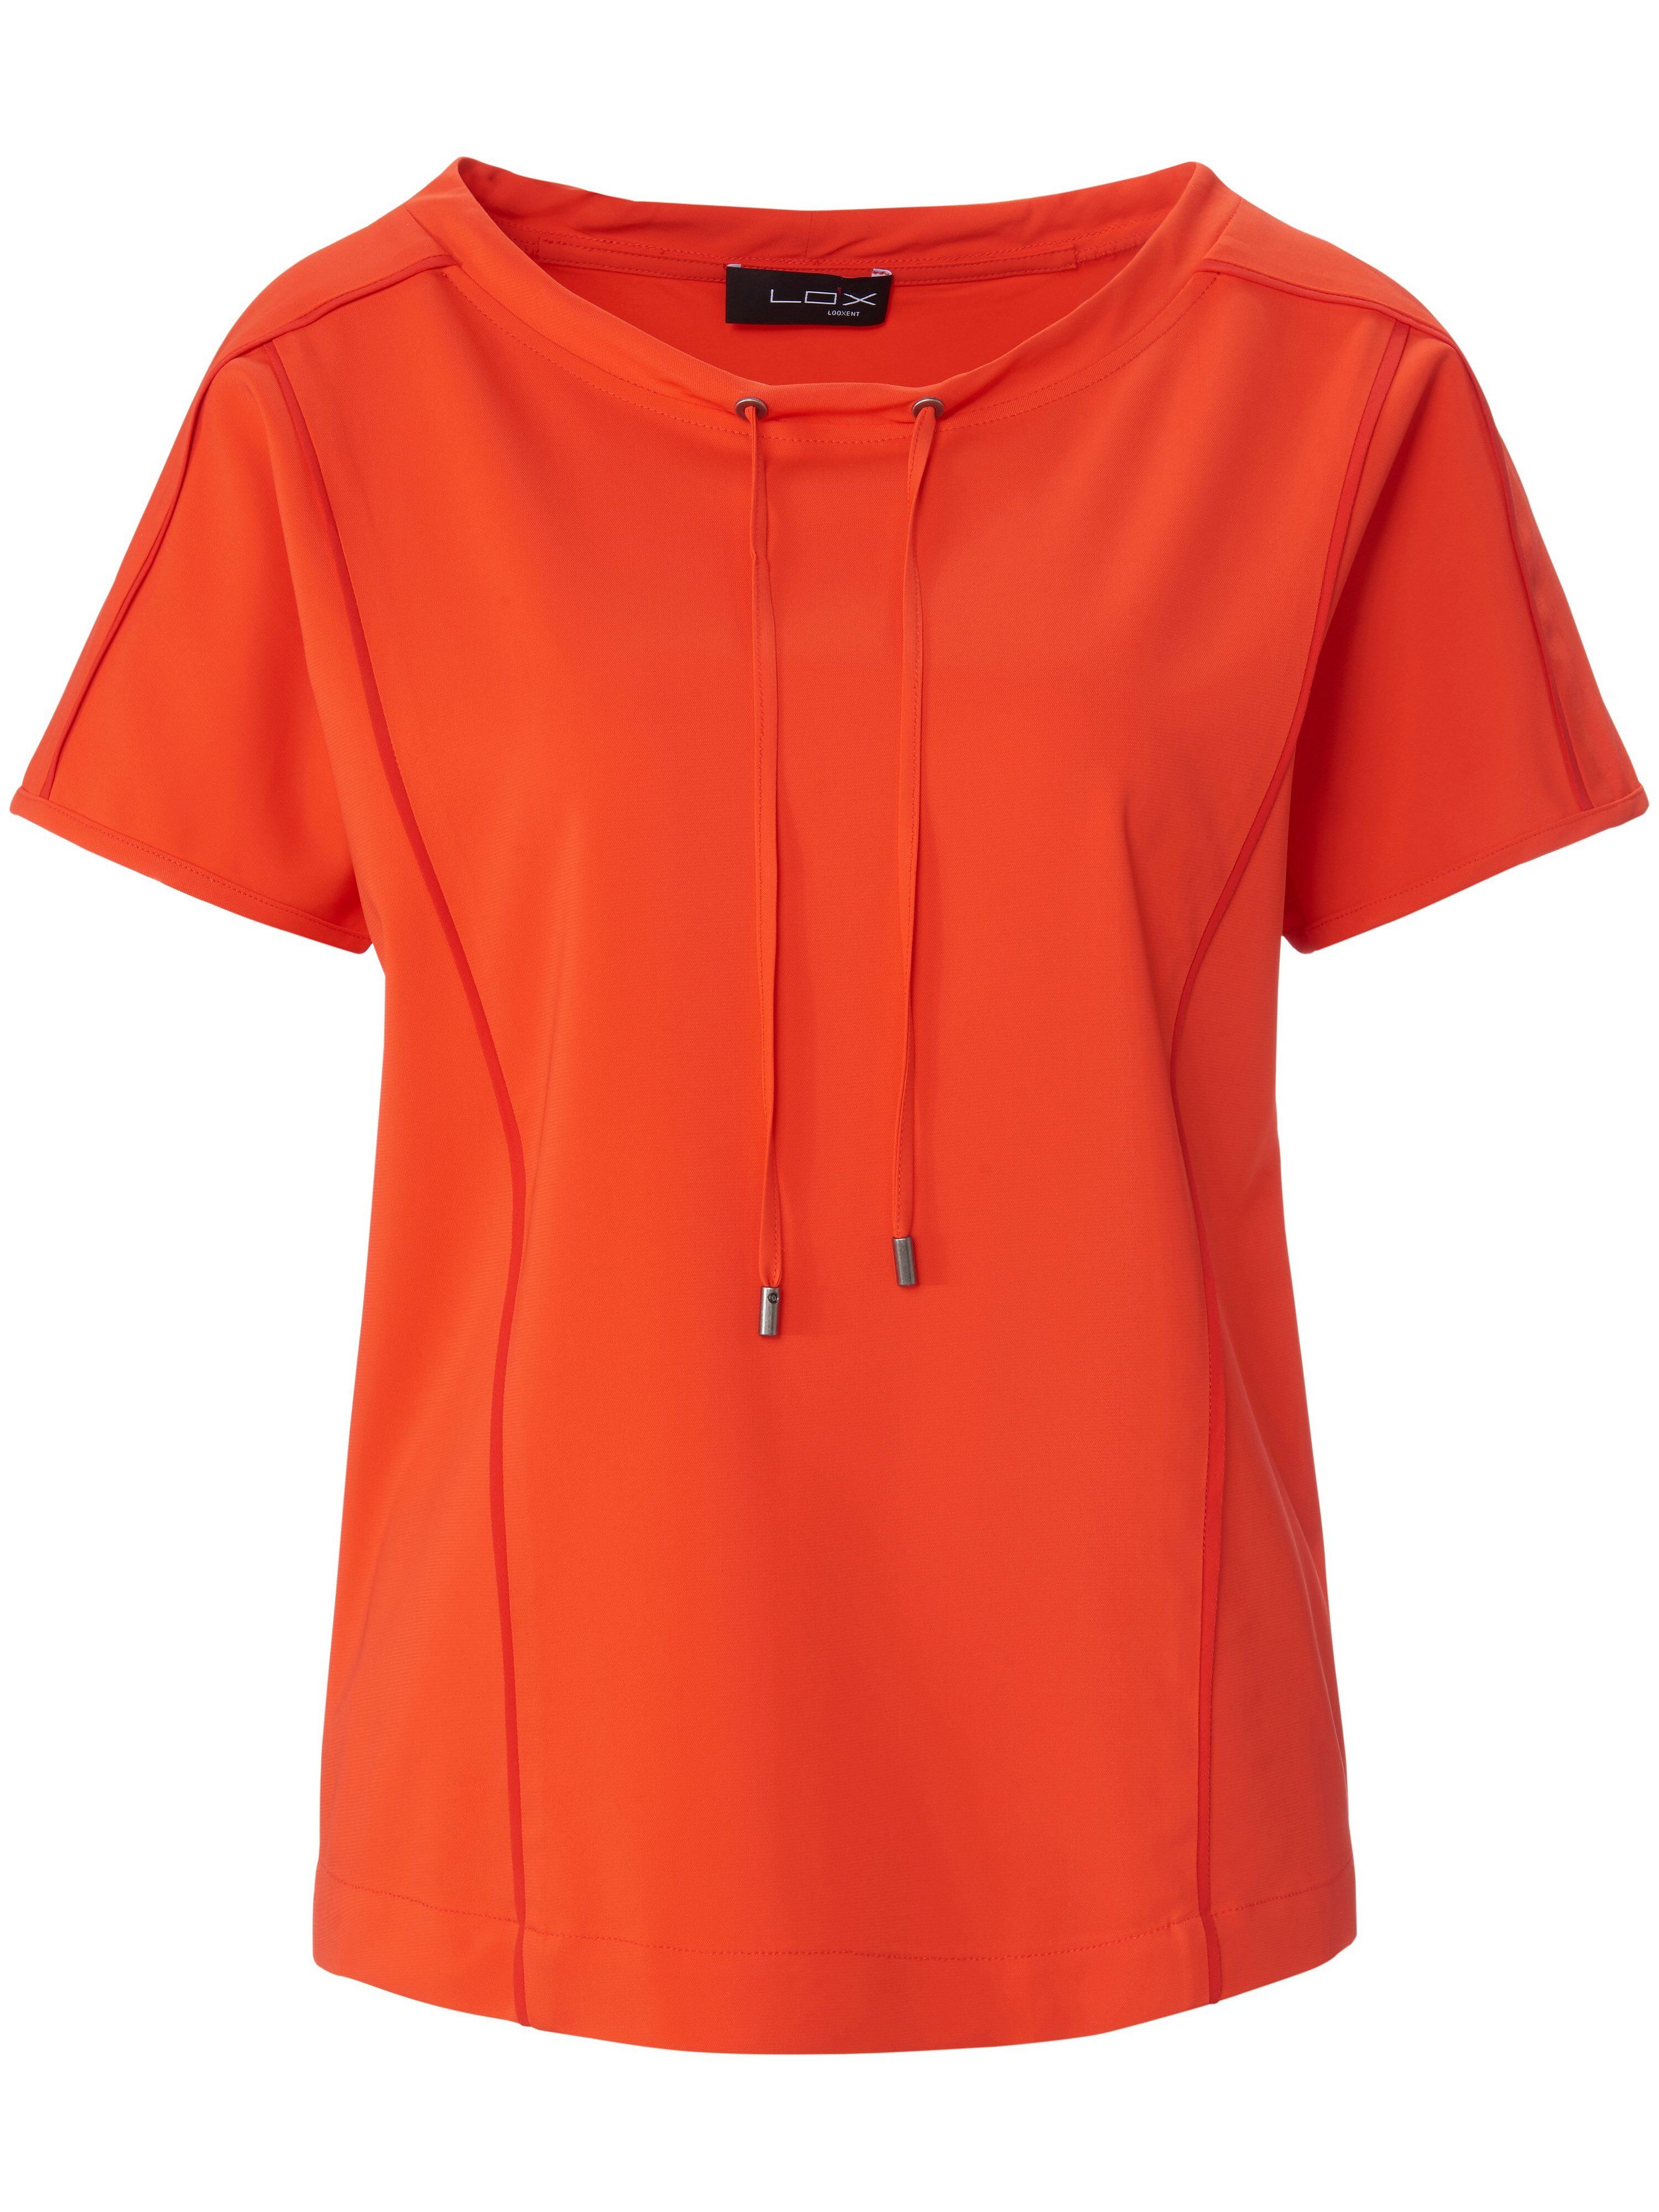 Looxent Blusen-Shirt zum Schlupfen Looxent orange Damen 44